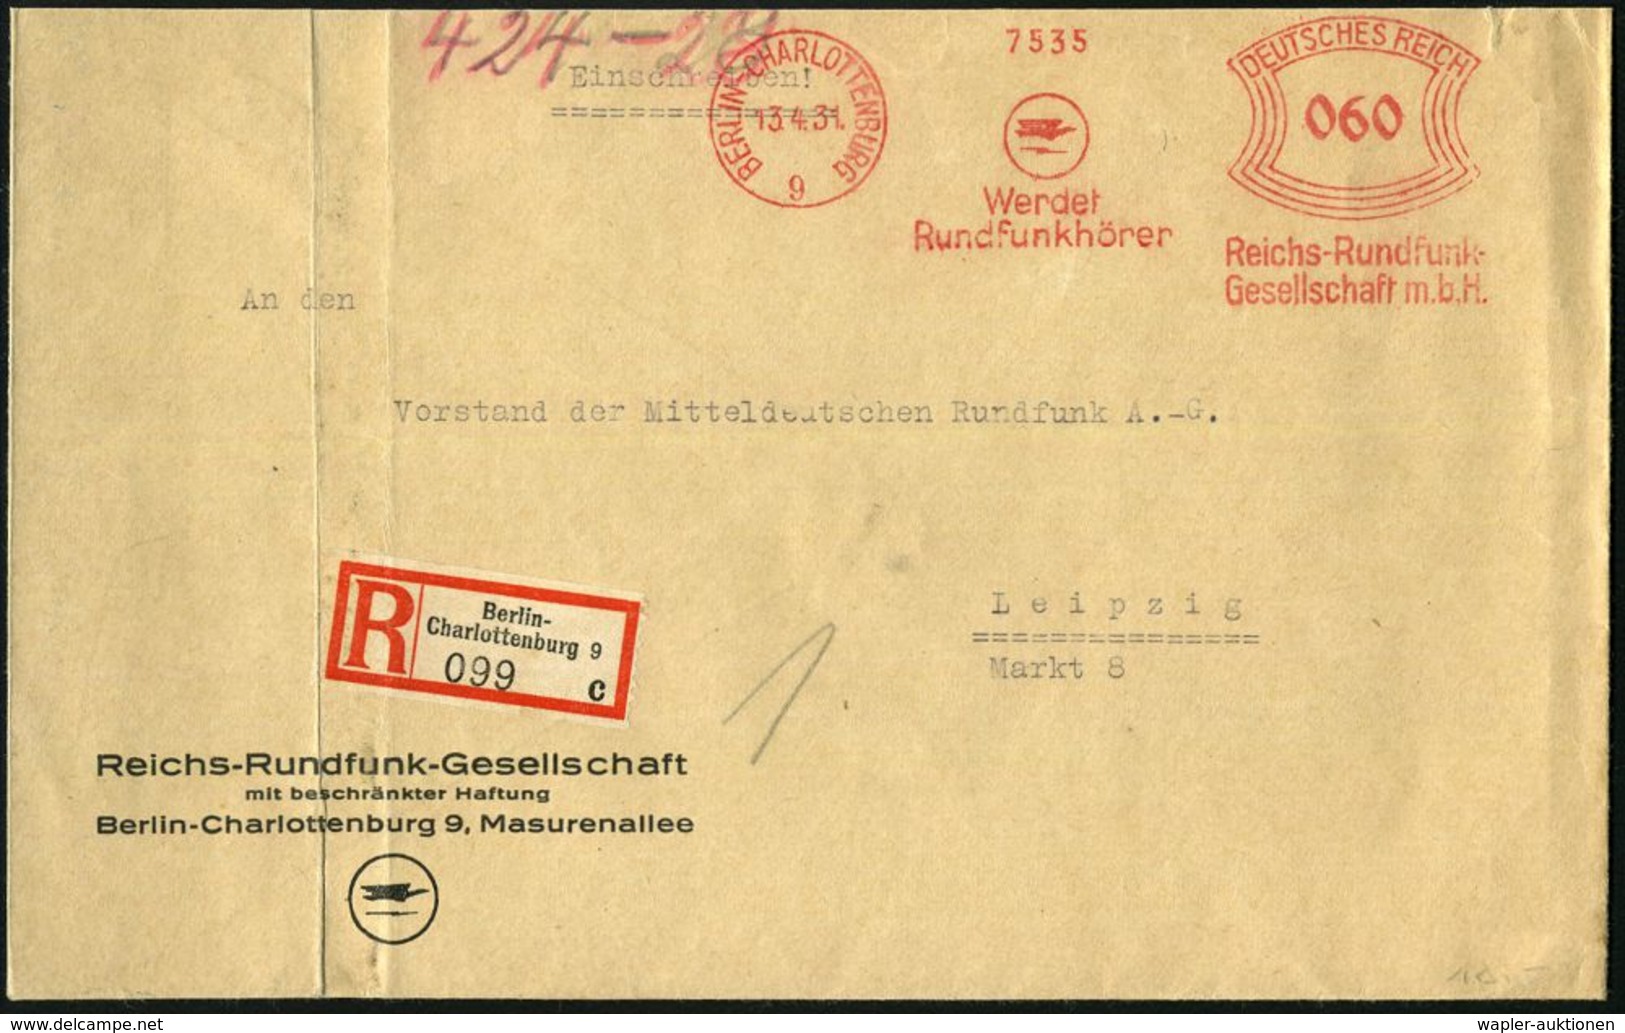 BERLIN-CHARLOTTENBURG/ 9/ Werdet/ Rundfunkhörer/ Reichs-Rundfunk-/ GmbH 1931 (13.4.) AFS 060 Pf. (Logo) Auf Motivgl. Vor - Non Classés